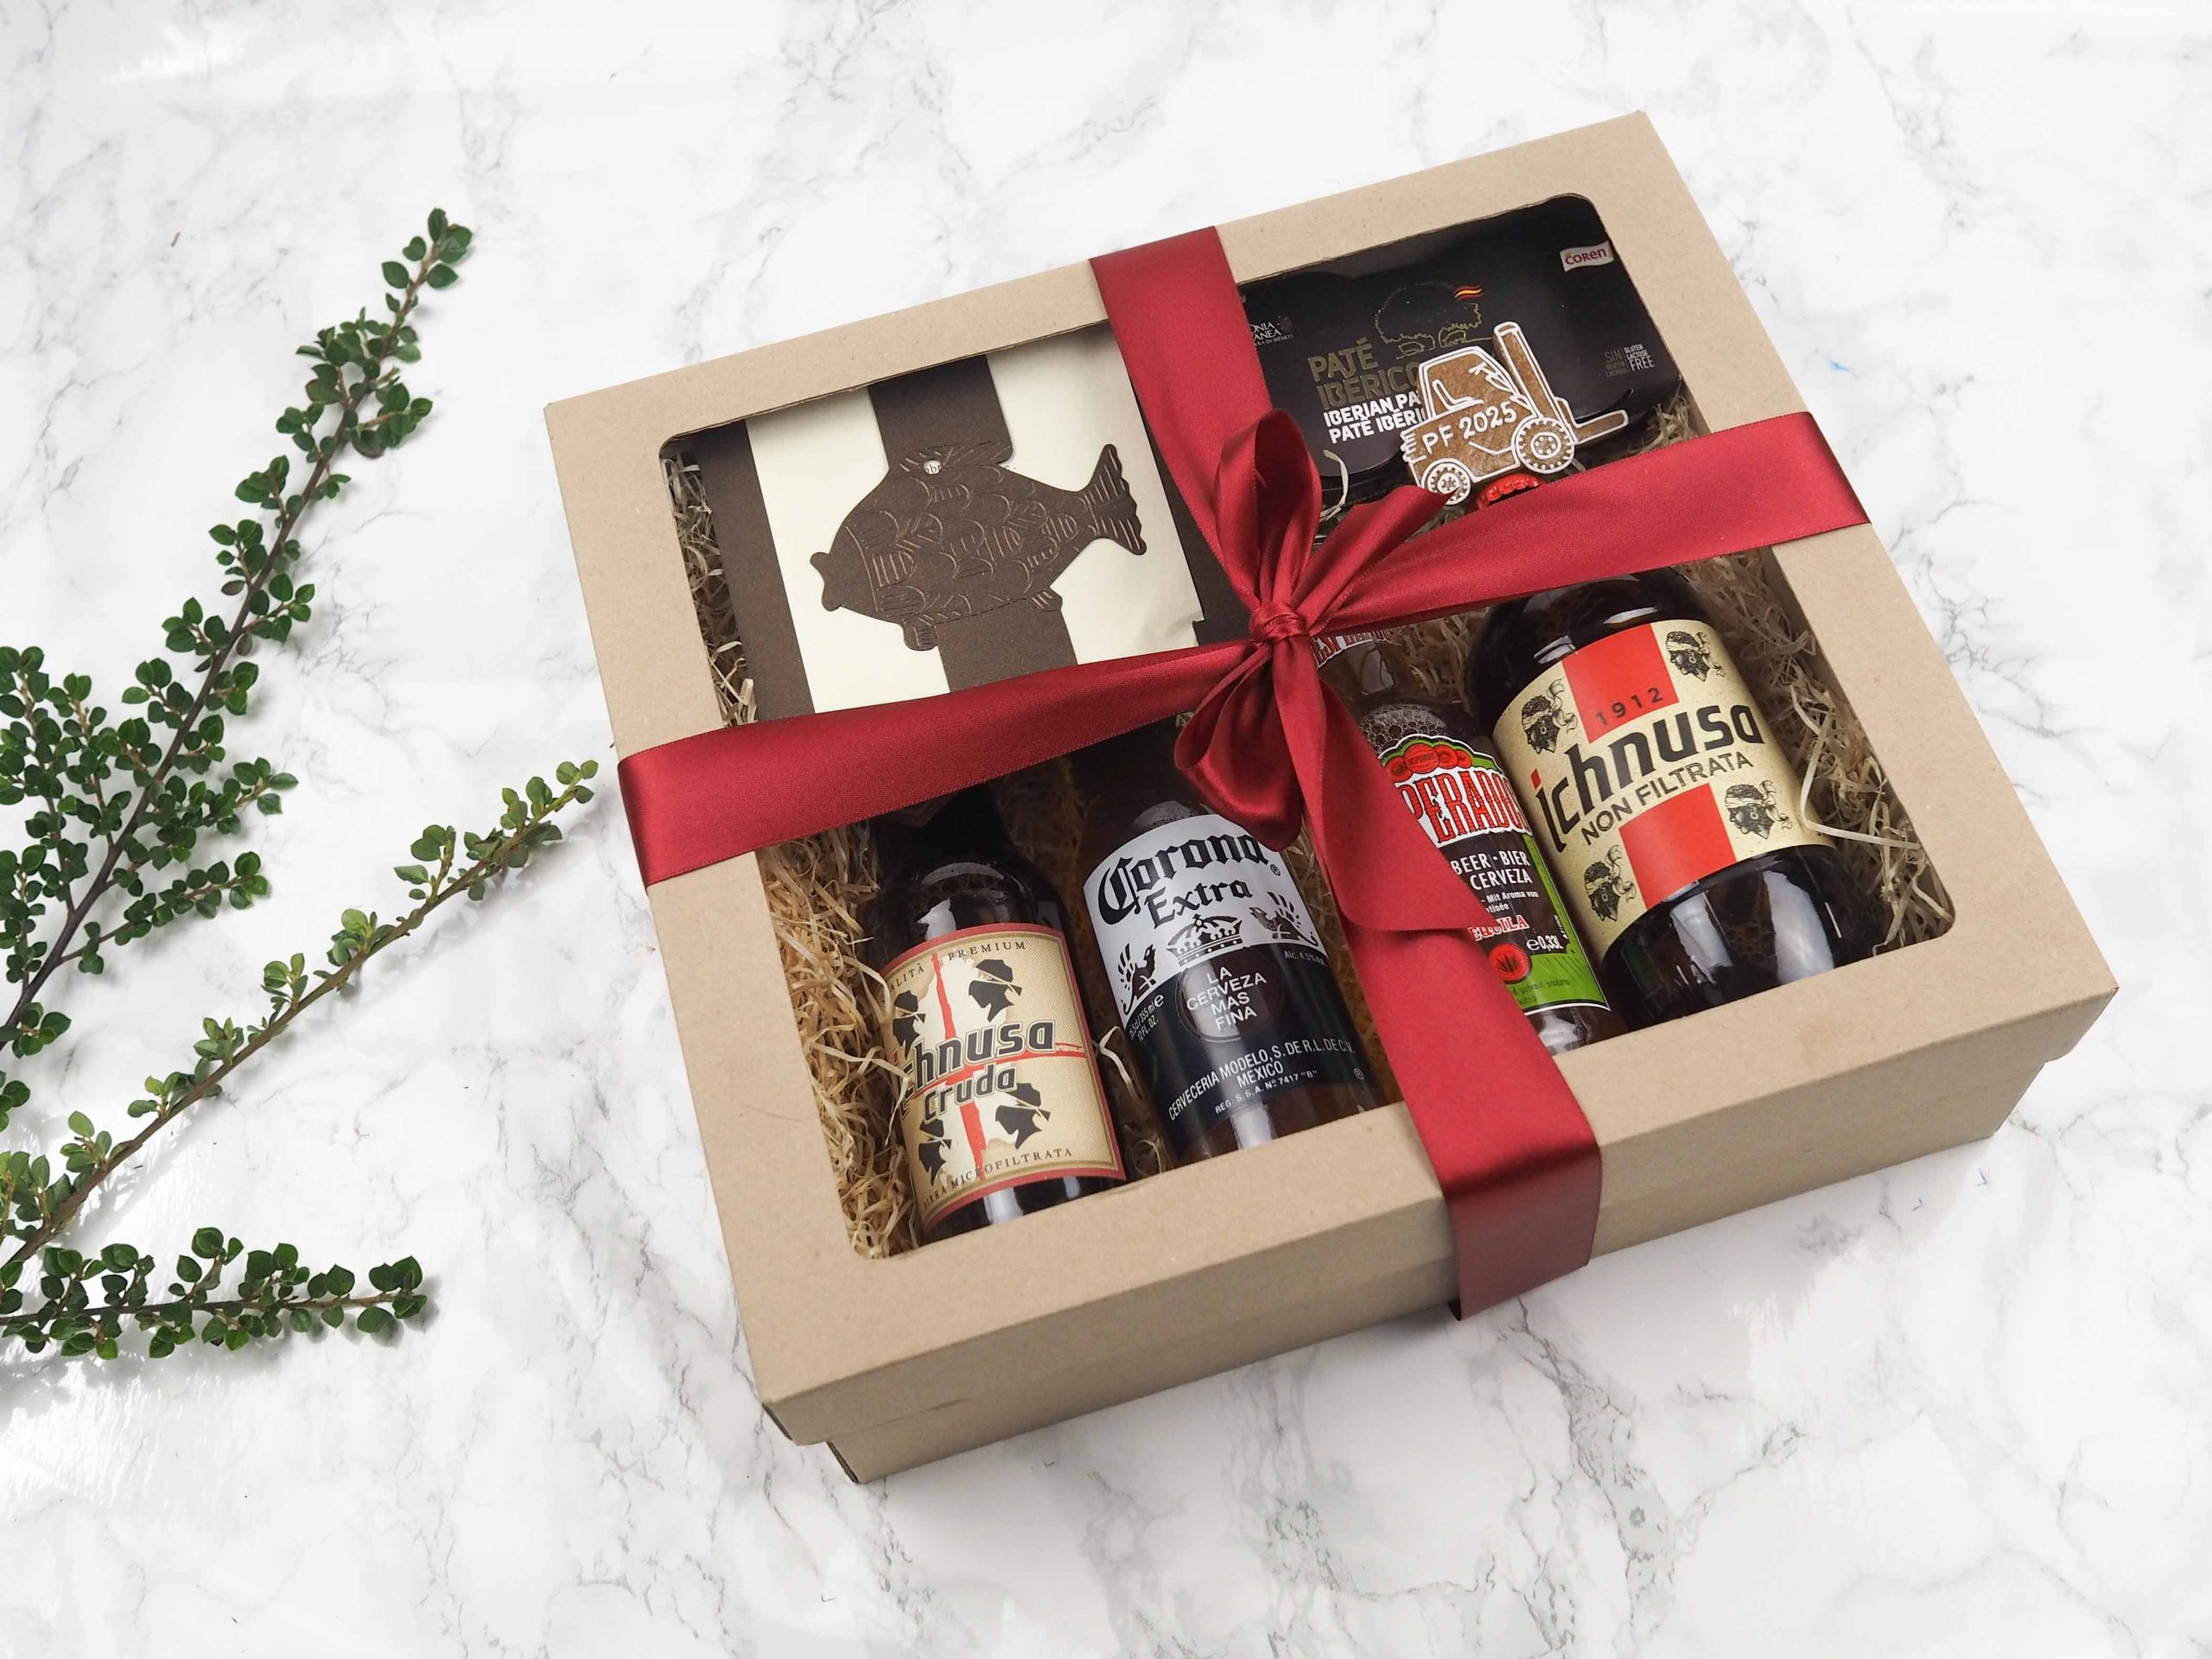 Dárkový balíček Pivní večer v sobě obsahuje novoročenku, italské pivo Ichnusa, pivo Corona, Desperado, paté s lanýžovou příchutí a medový perníček ve tvaru vysokozdvihu.